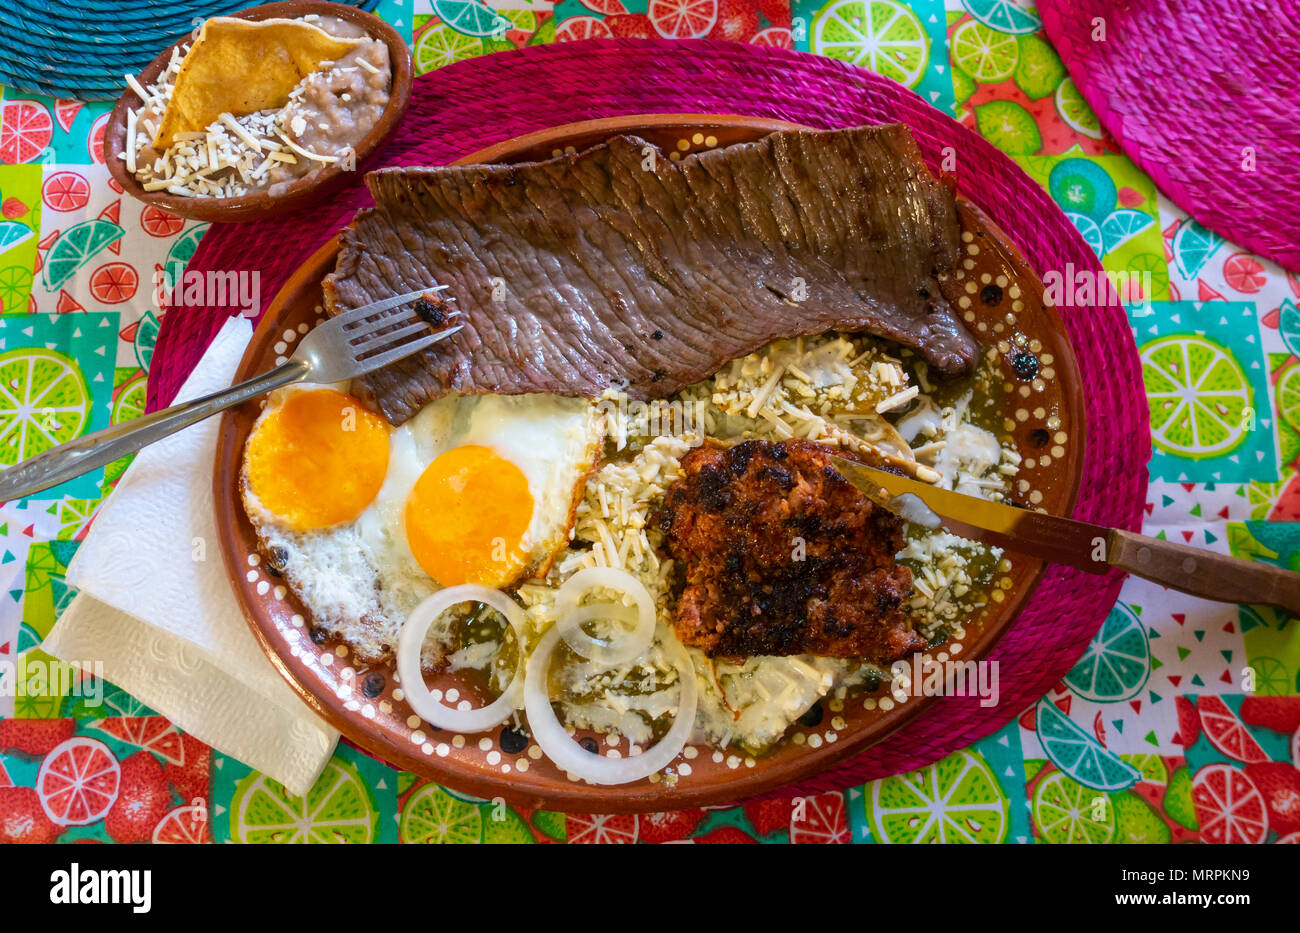 Ein komplettes mexikanisches Frühstück mit Steak, Wurst, Eiern, Bohnen, Käse, Tortillas und eine grüne Sauce. Stockfoto